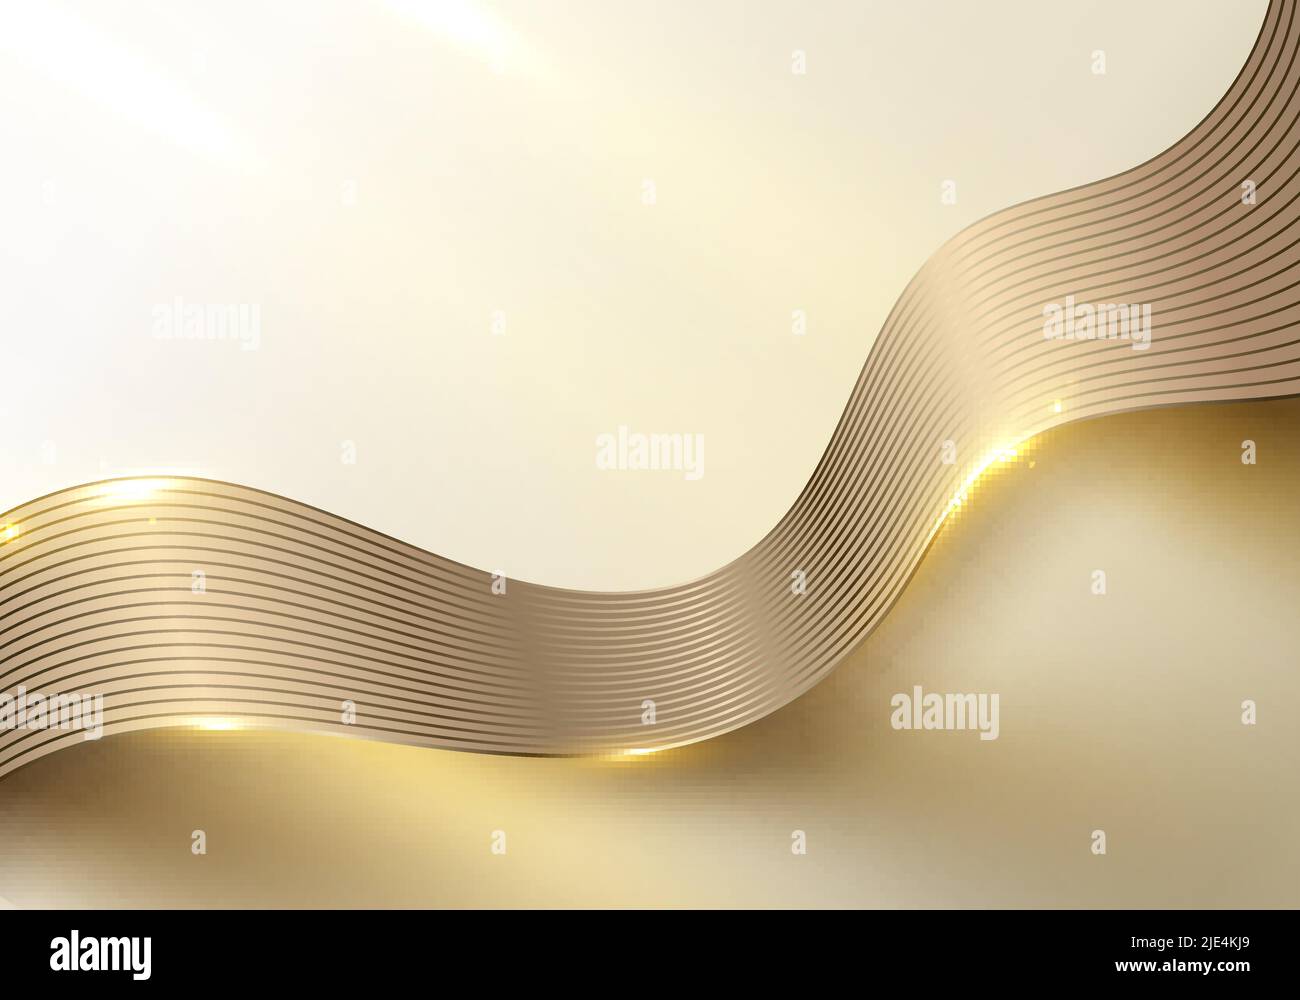 Abstrait 3D élégantes lignes de vagues dorées et de la lumière étincelles sur fond propre style de luxe.Illustration graphique vectorielle Illustration de Vecteur